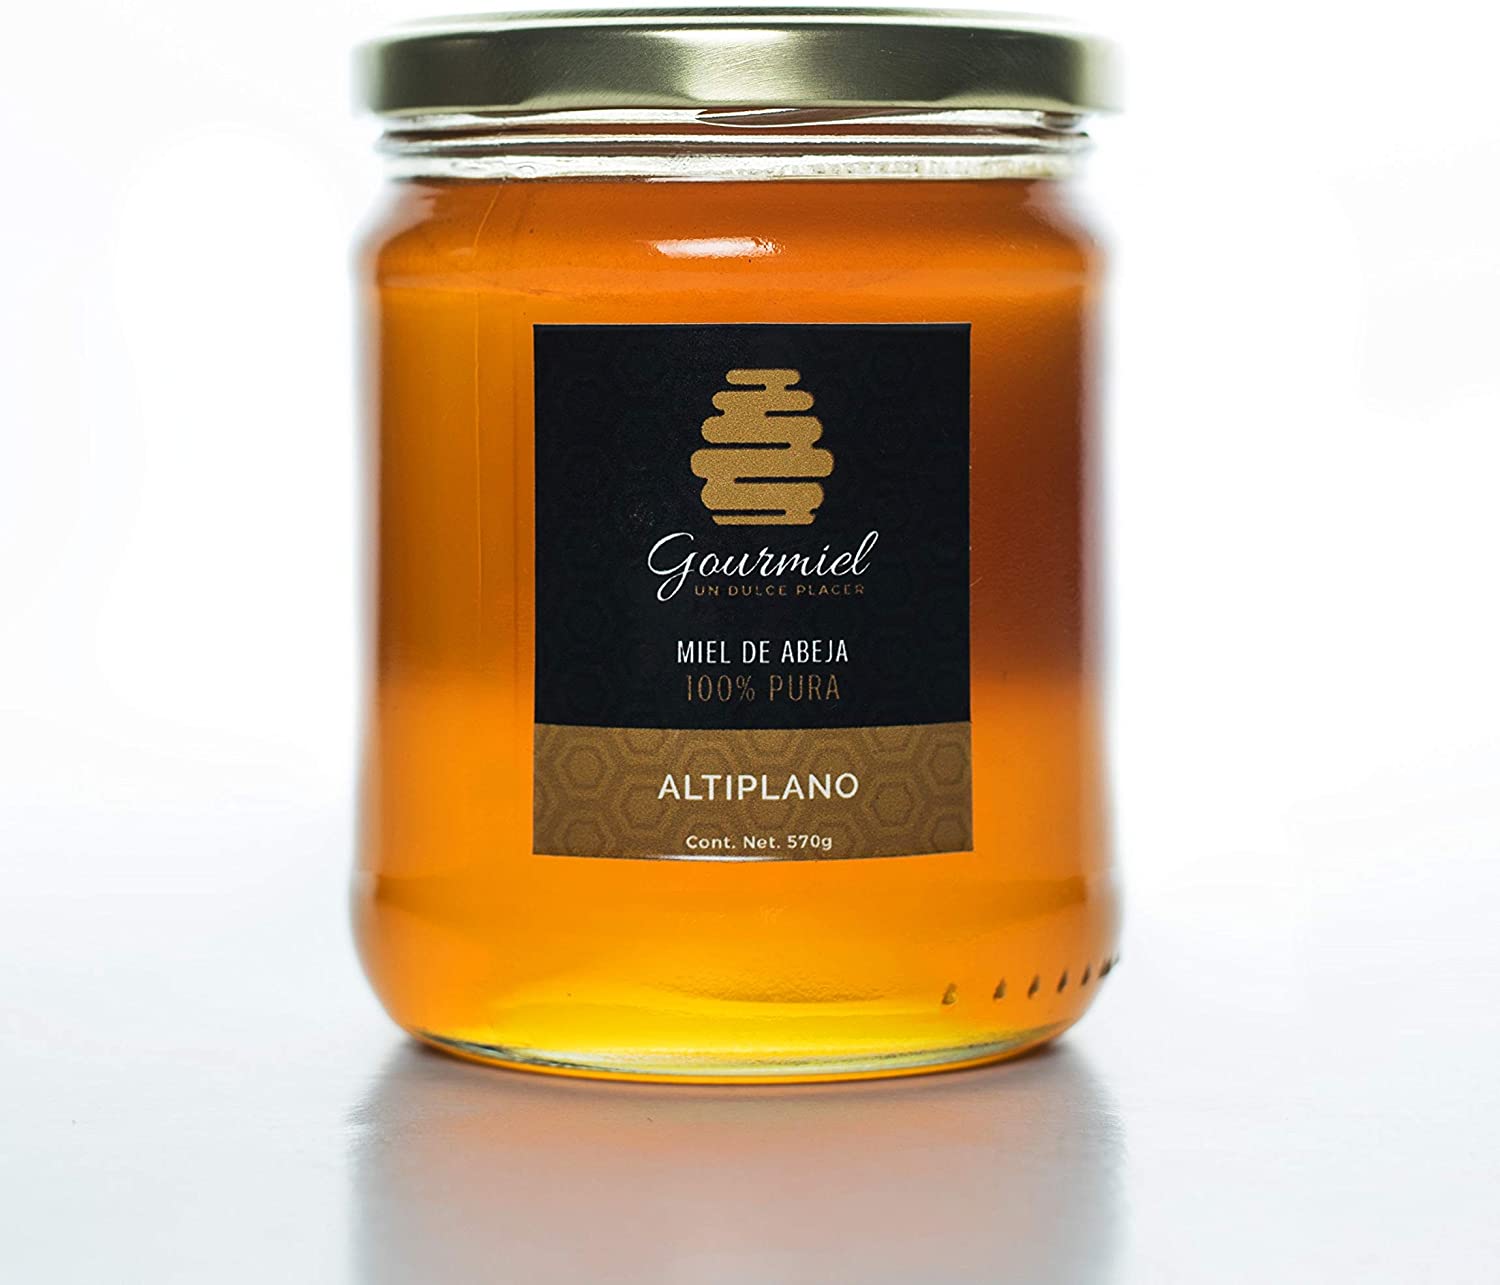 Miel de abeja tipo mantequilla 100% pura, 600 gms